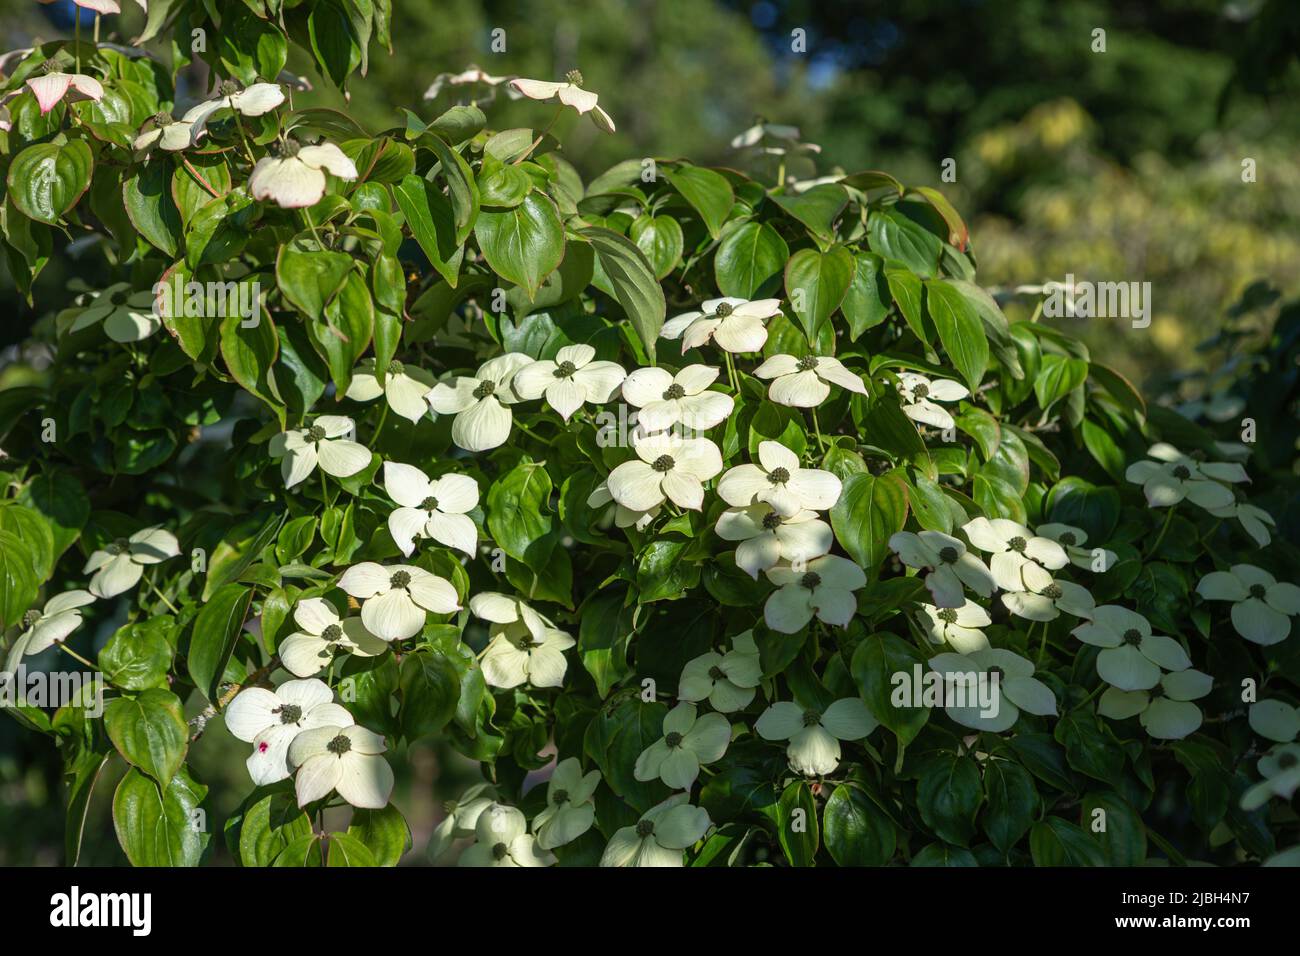 Cornus kousa (Szechuan-Erdbeere) in Blüte, weiße cremefarbene Blätter, Nahaufnahme des blühenden Astes in der Sonne und gedappter Schatten Stockfoto